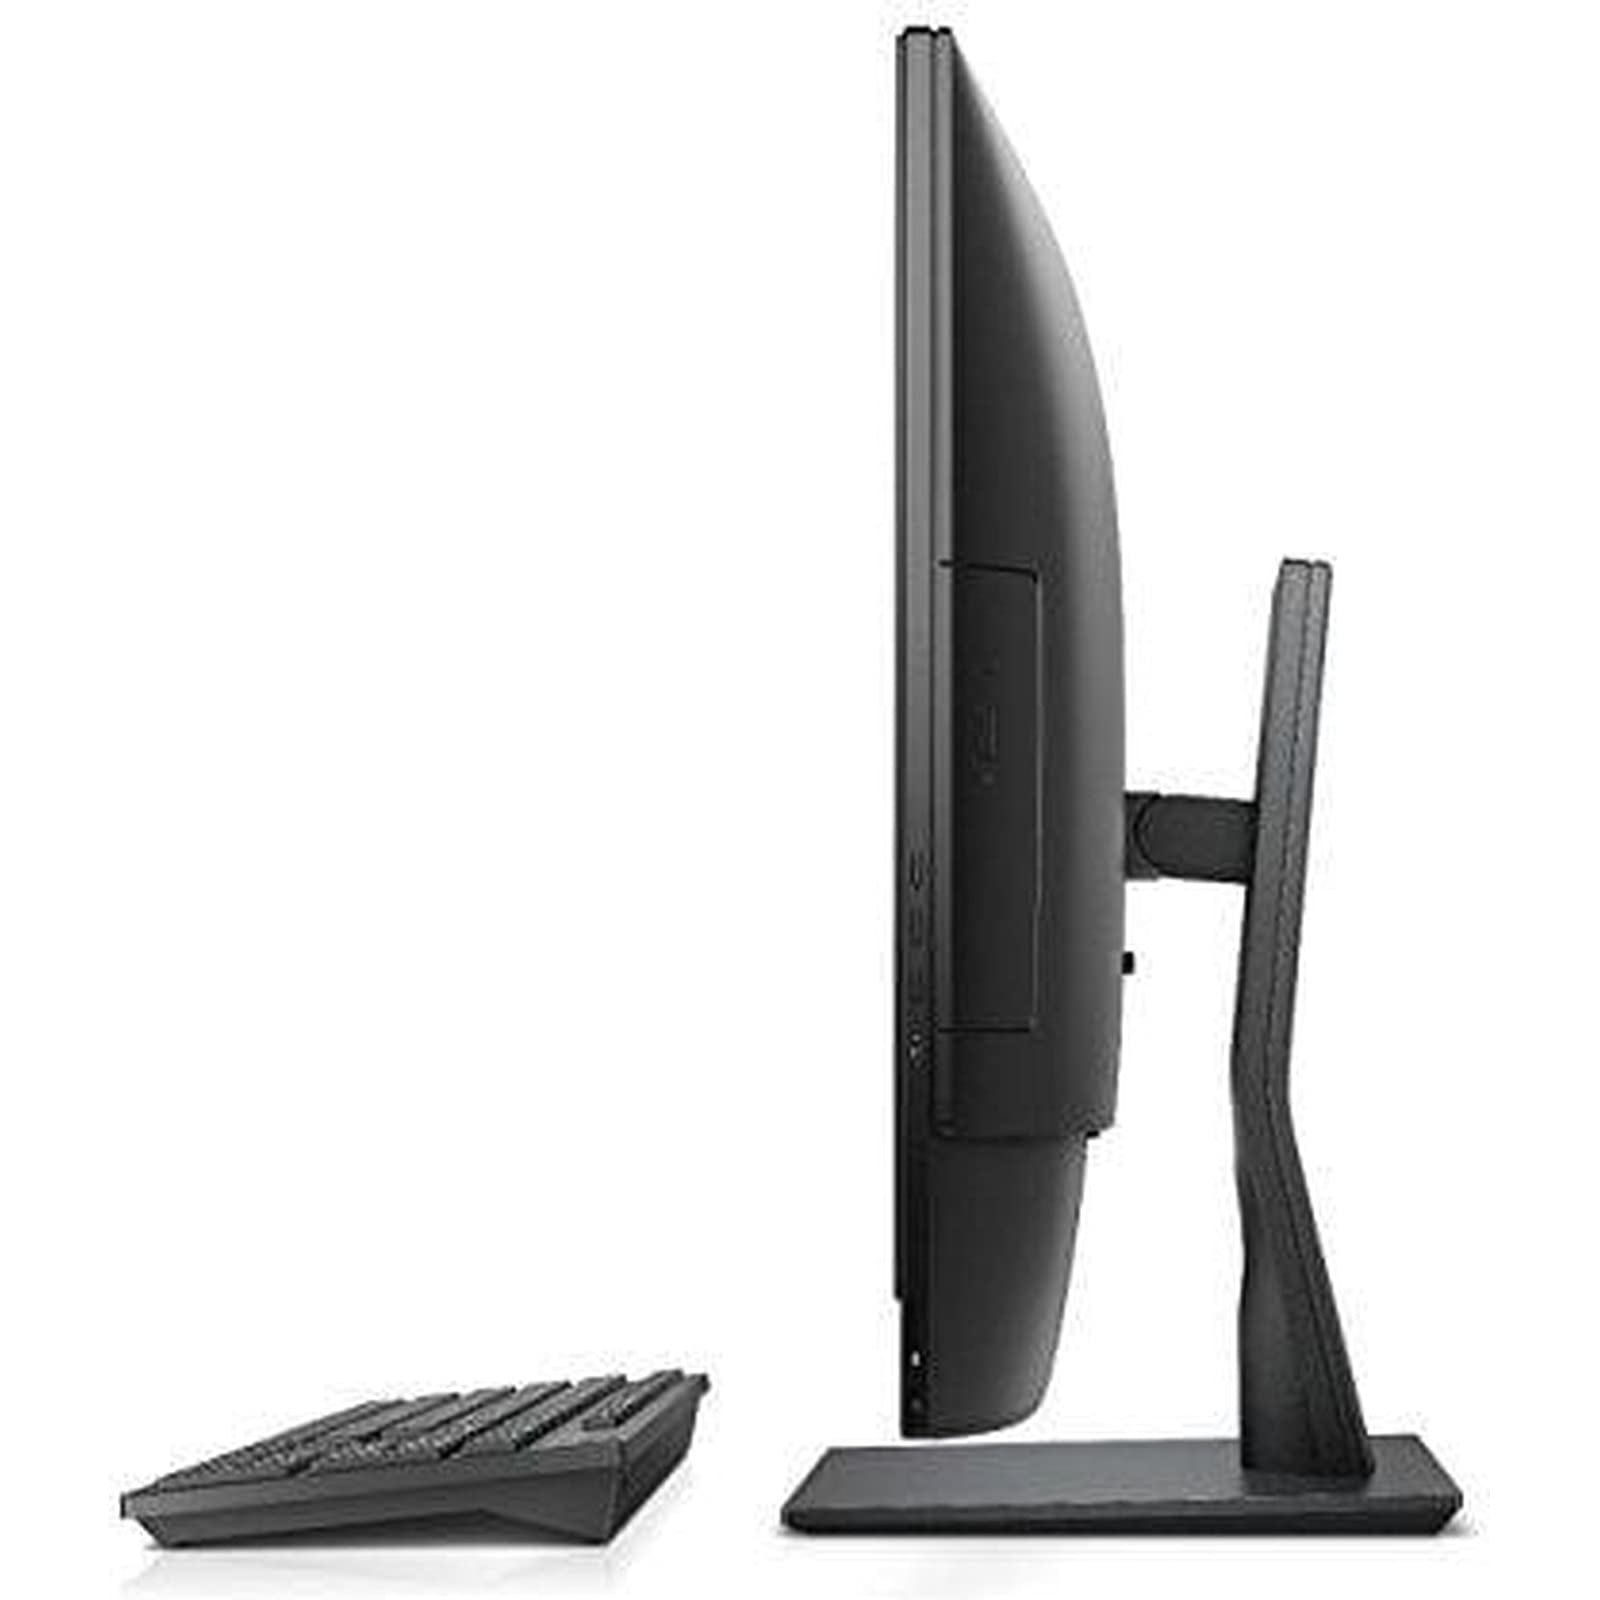 Dell OptiPlex 7450 23.8 Inch All-in-One Desktop Computer AIO PC, 1920x1080 FHD Display, Intel Quad Core i7-7700 3.60GHz, 8GB DDR4, 500GB HDD, Windows 10, DualBand WiFi, Bluetooth, Webcam (Renewed)